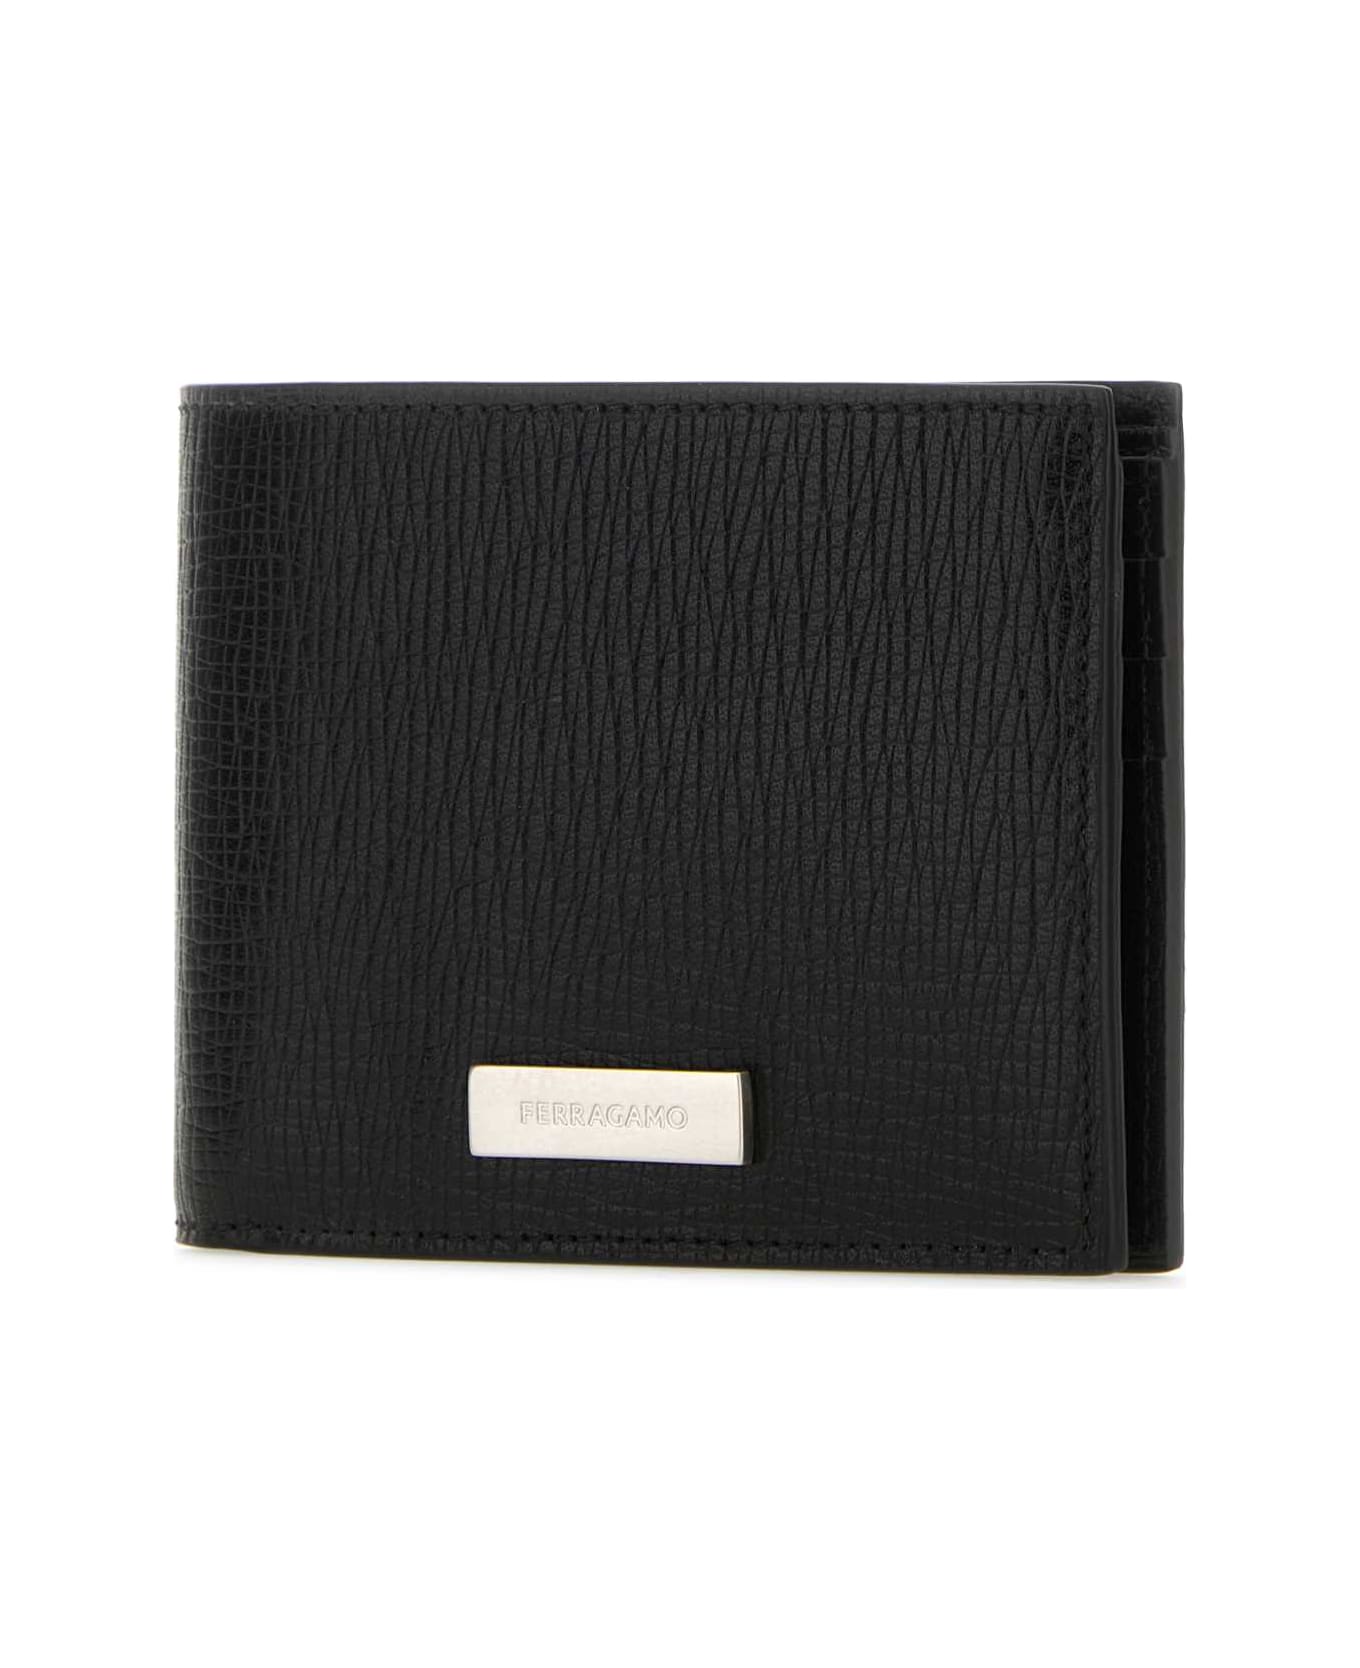 Ferragamo Black Leather Wallet - NERONERO